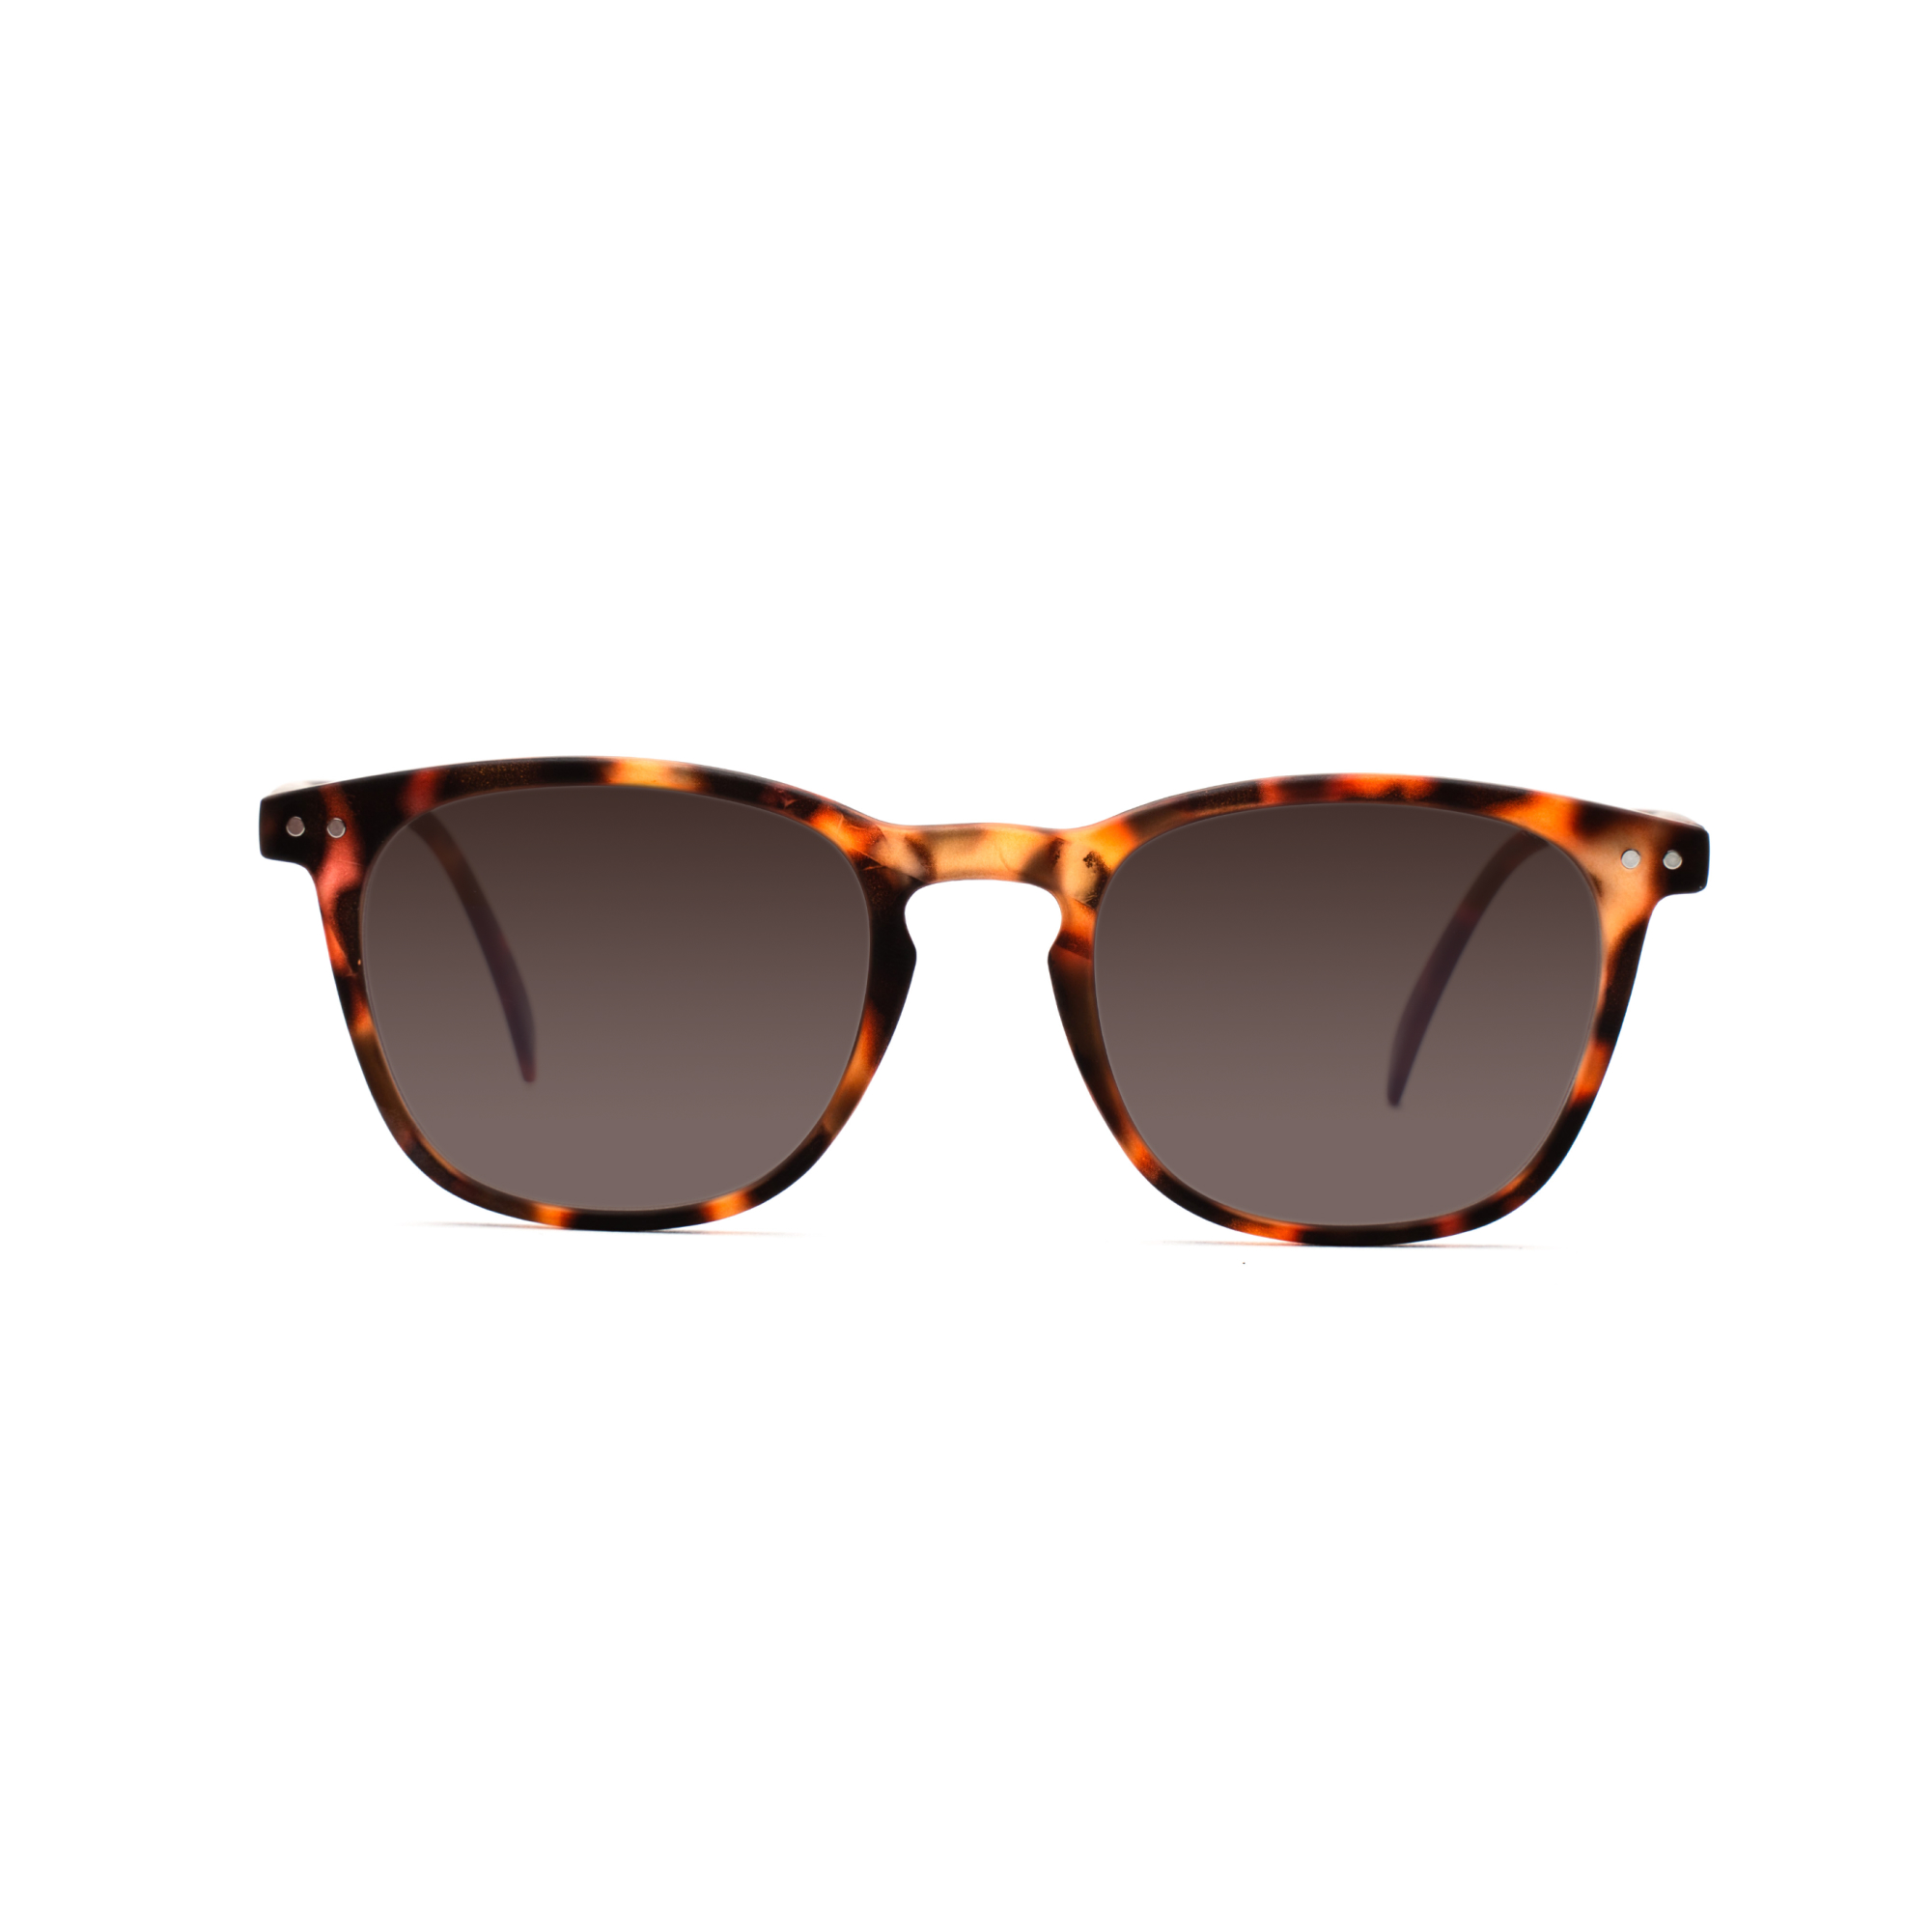 women's polarized sunglasses – William Polarised SUN w - Tortoise